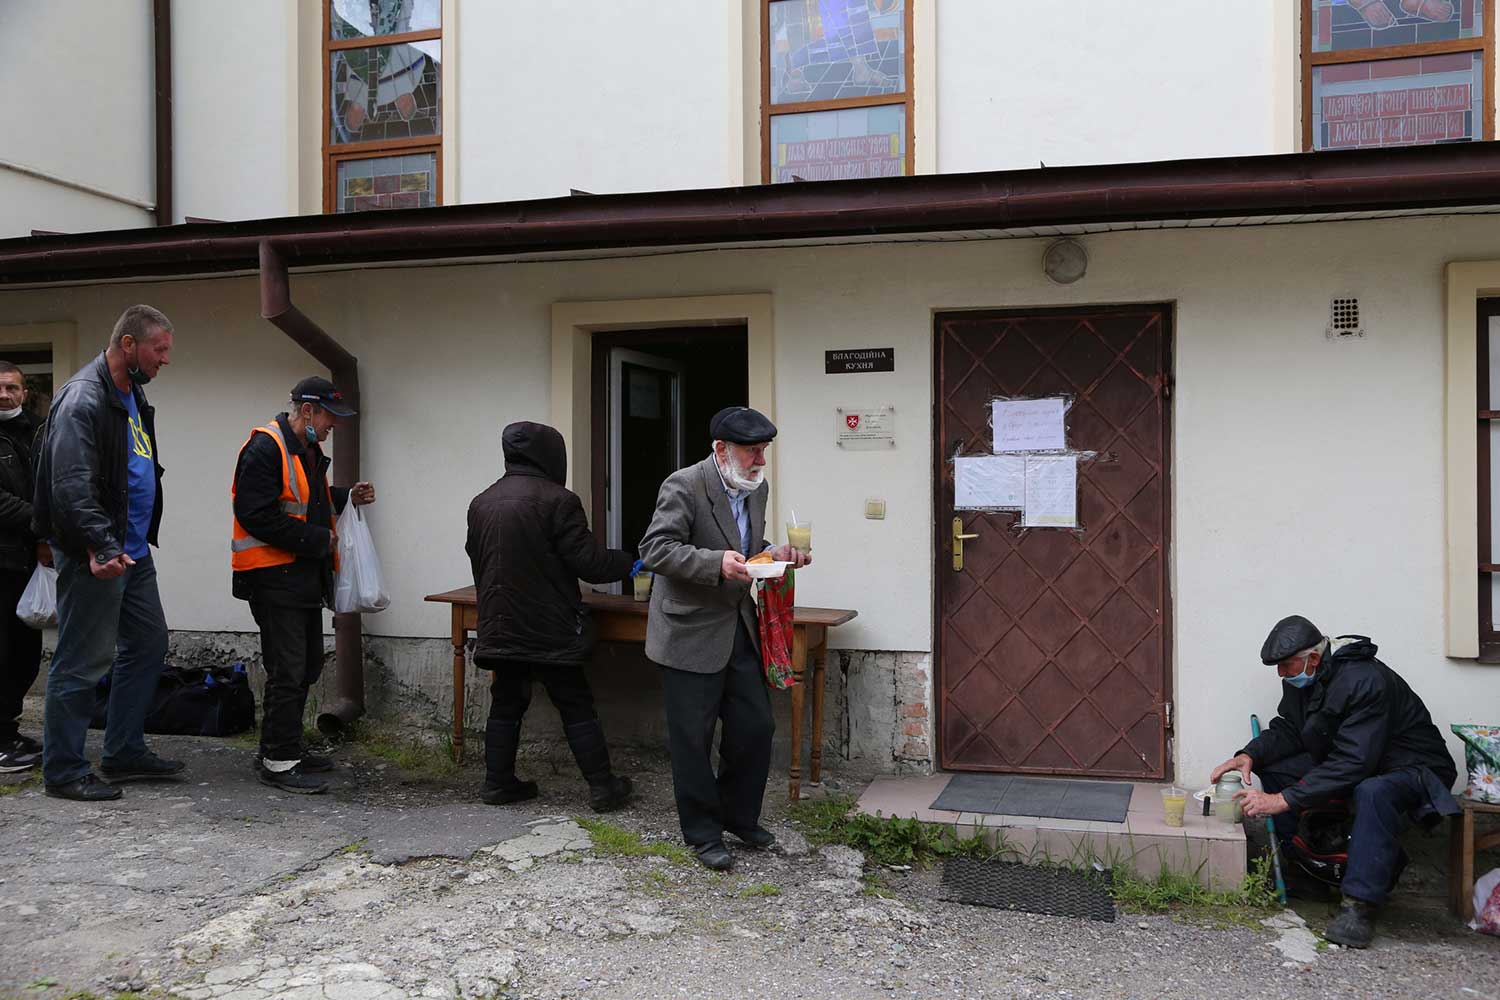 Ukraine, Malteser International prepares aid for refugees